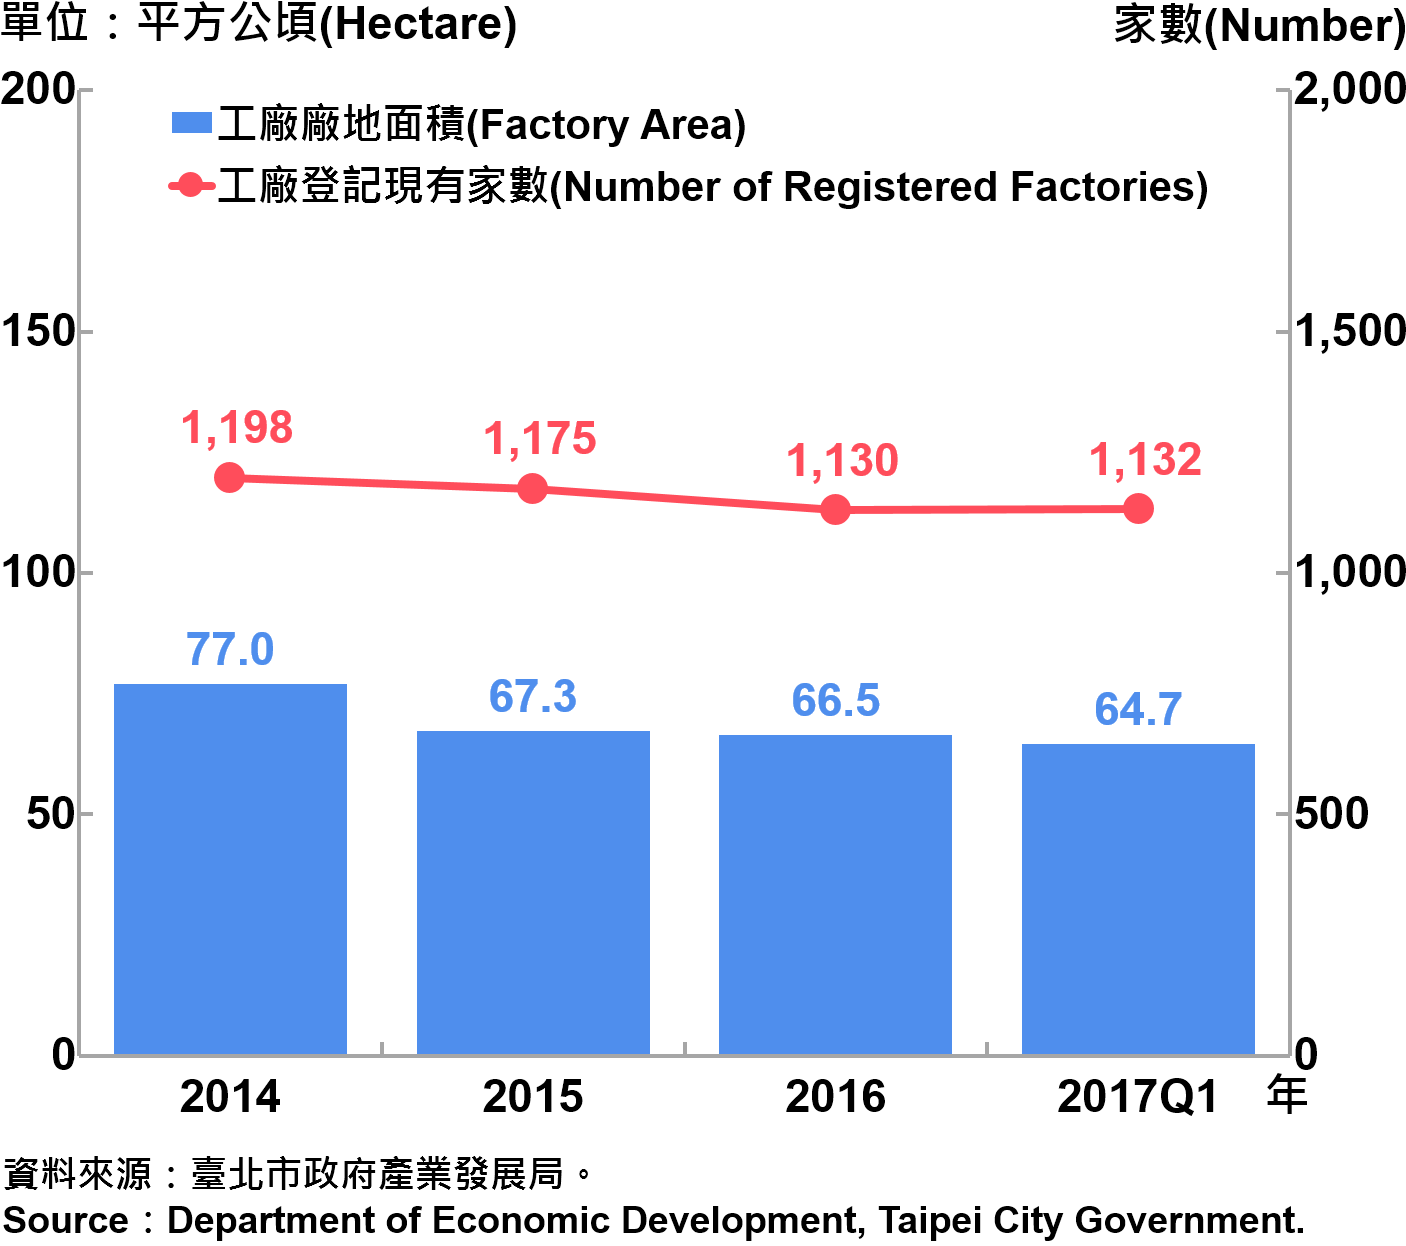 圖5、臺北市工廠登記家數及廠地面積—2017Q1 Number of Factories Registered and Factory Lands in Taipei—2017Q1